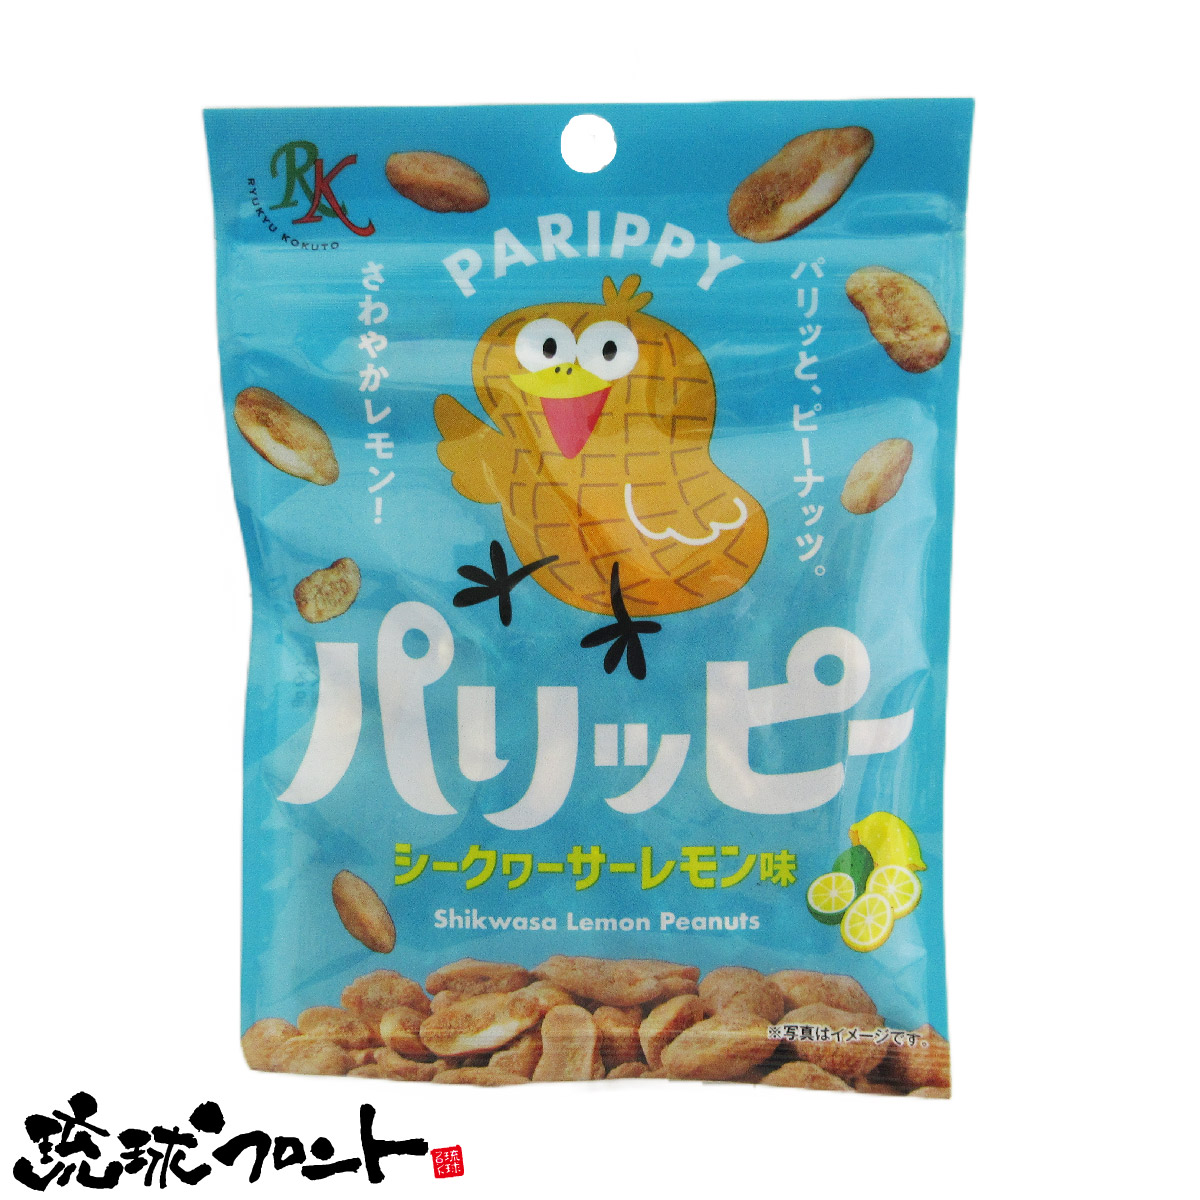 パリッピー シークヮーサーレモン味 35g 沖縄 お土産 豆菓子 シークワーサー レモン PARIPPY 琉球黒糖